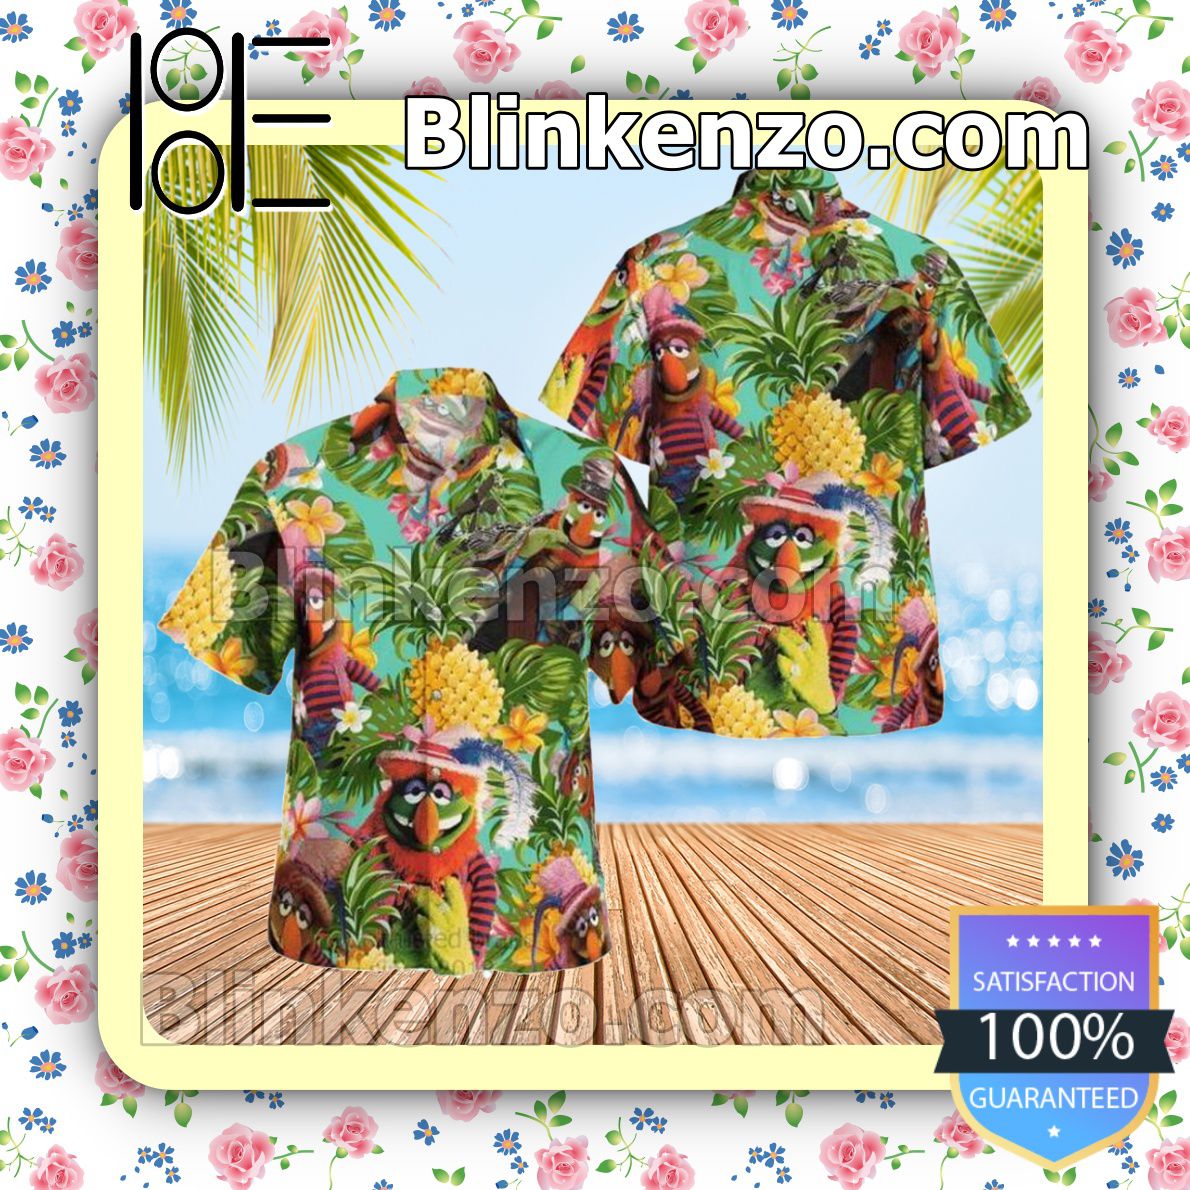 Dr. Teeth The Muppet Tropical Pineapple Beach Shirt